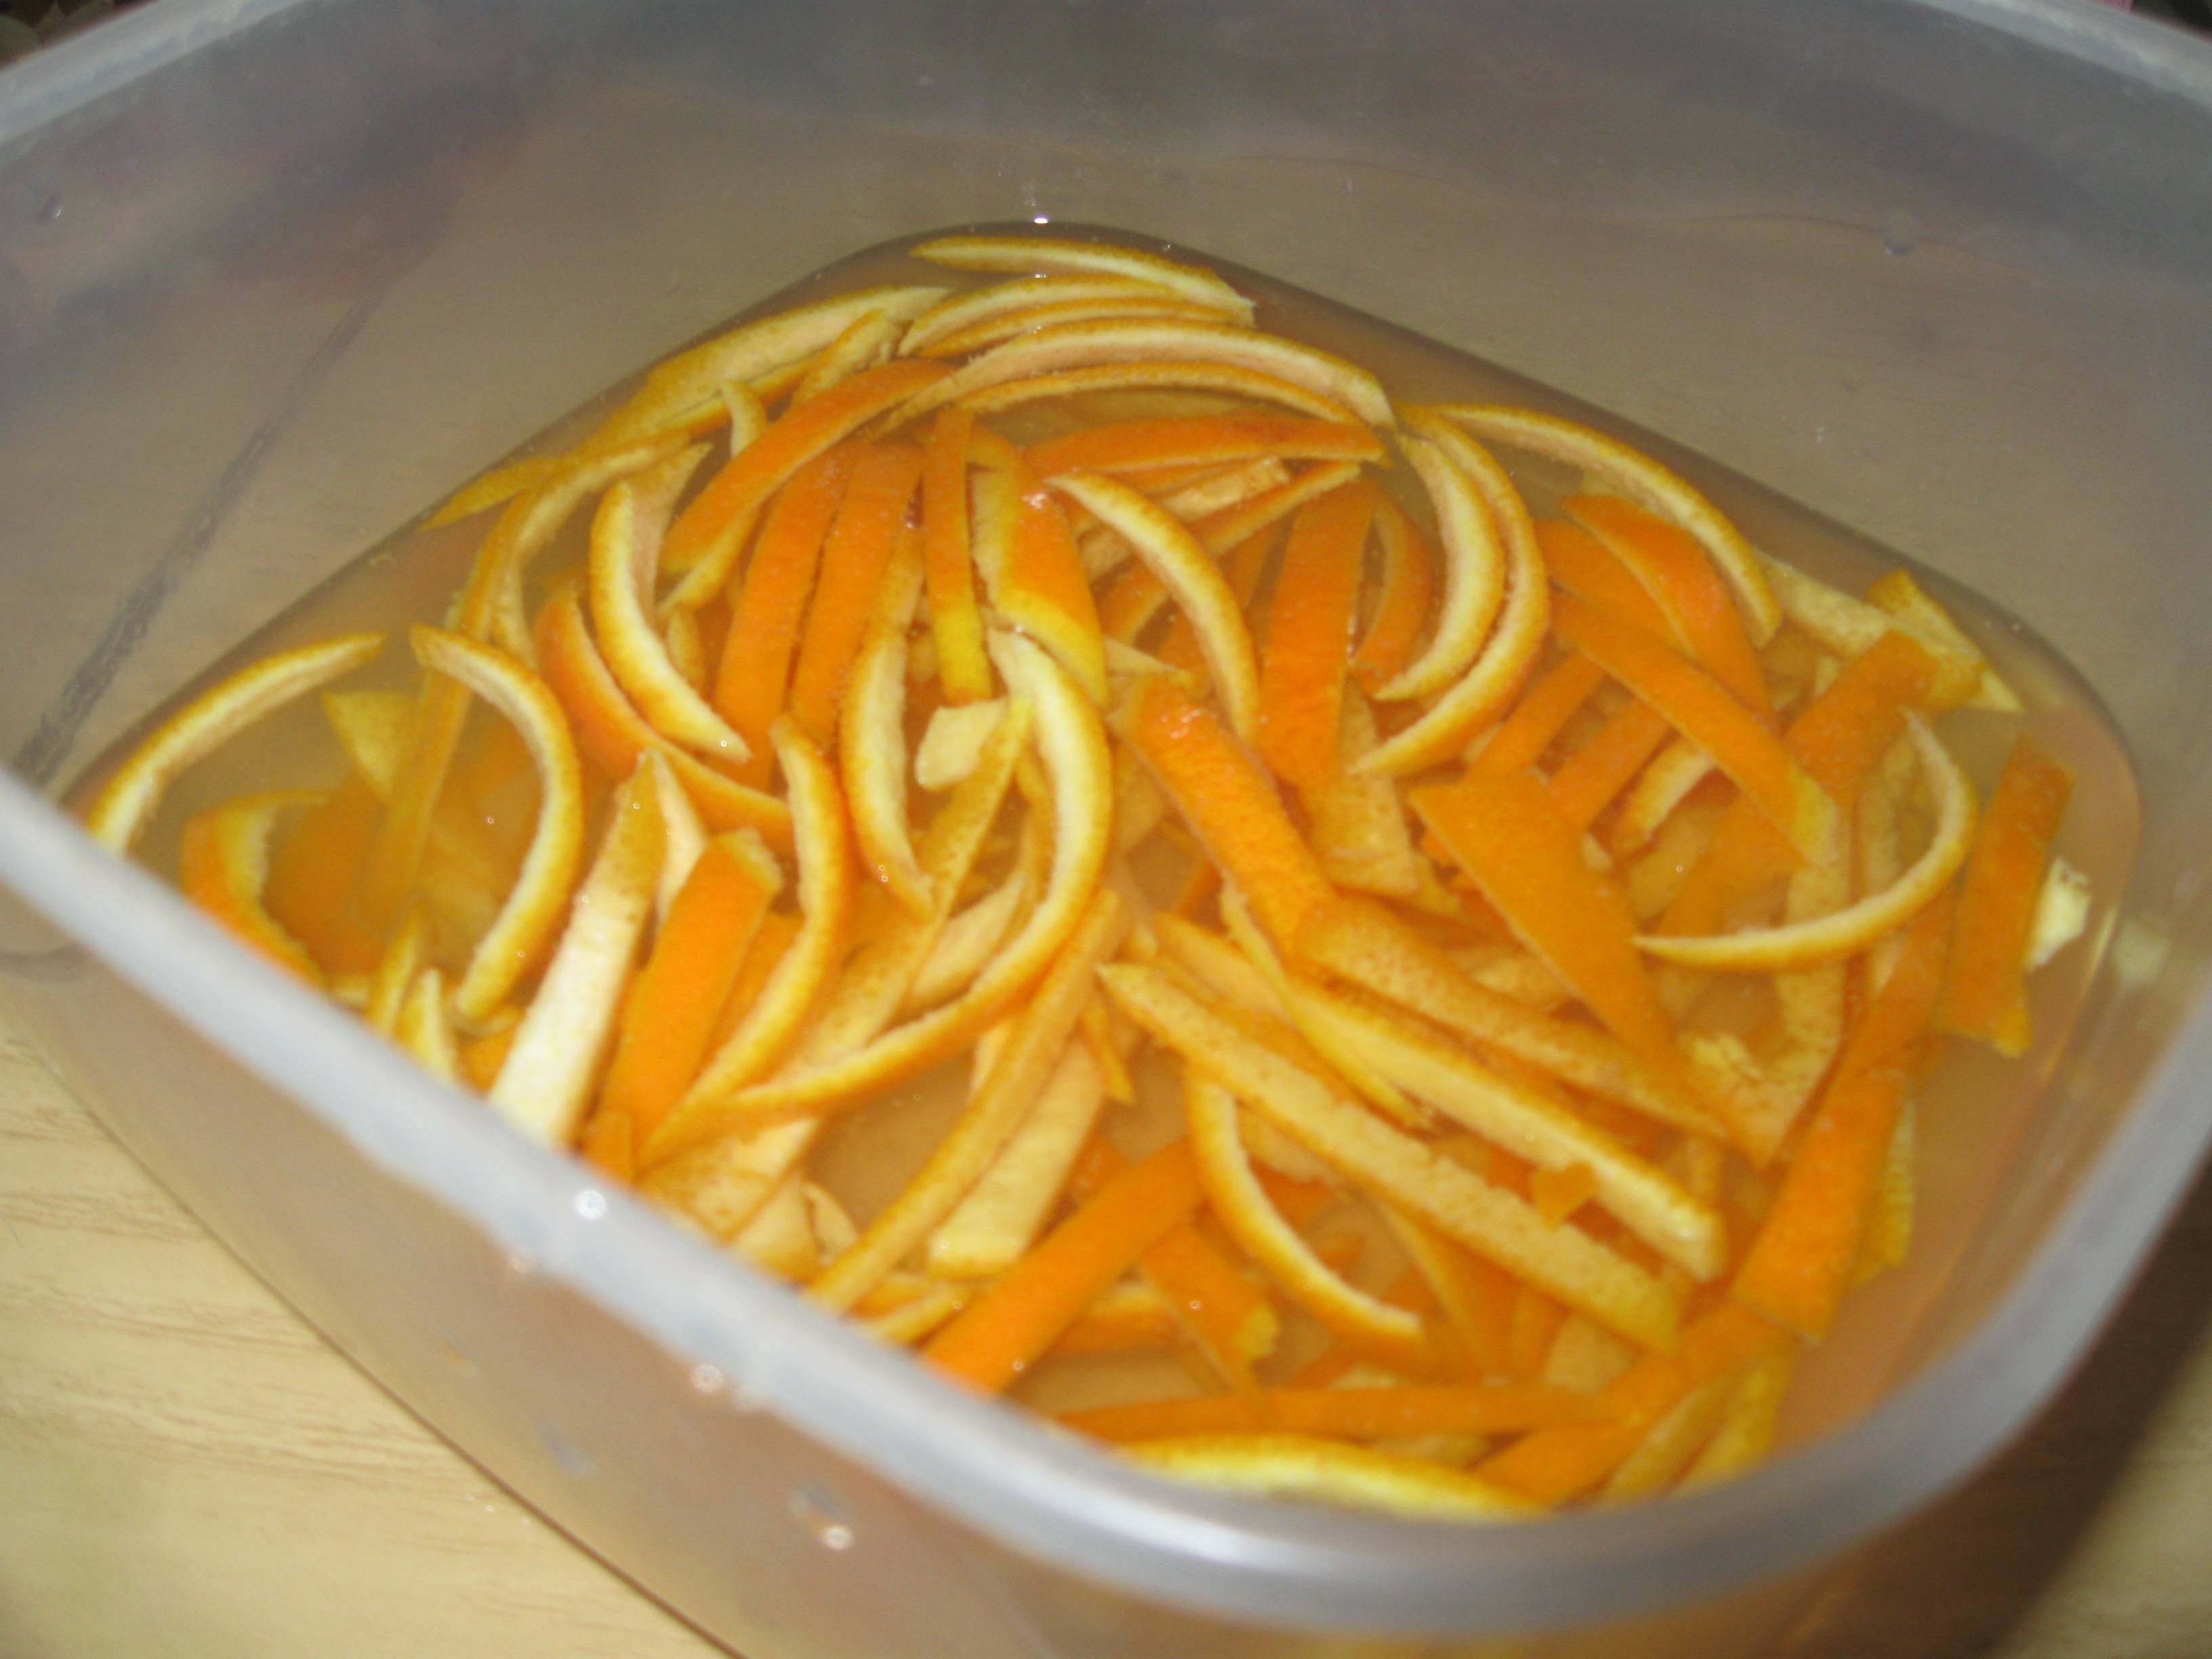 Быстрый рецепт приготовления цукатов из апельсиновых корок